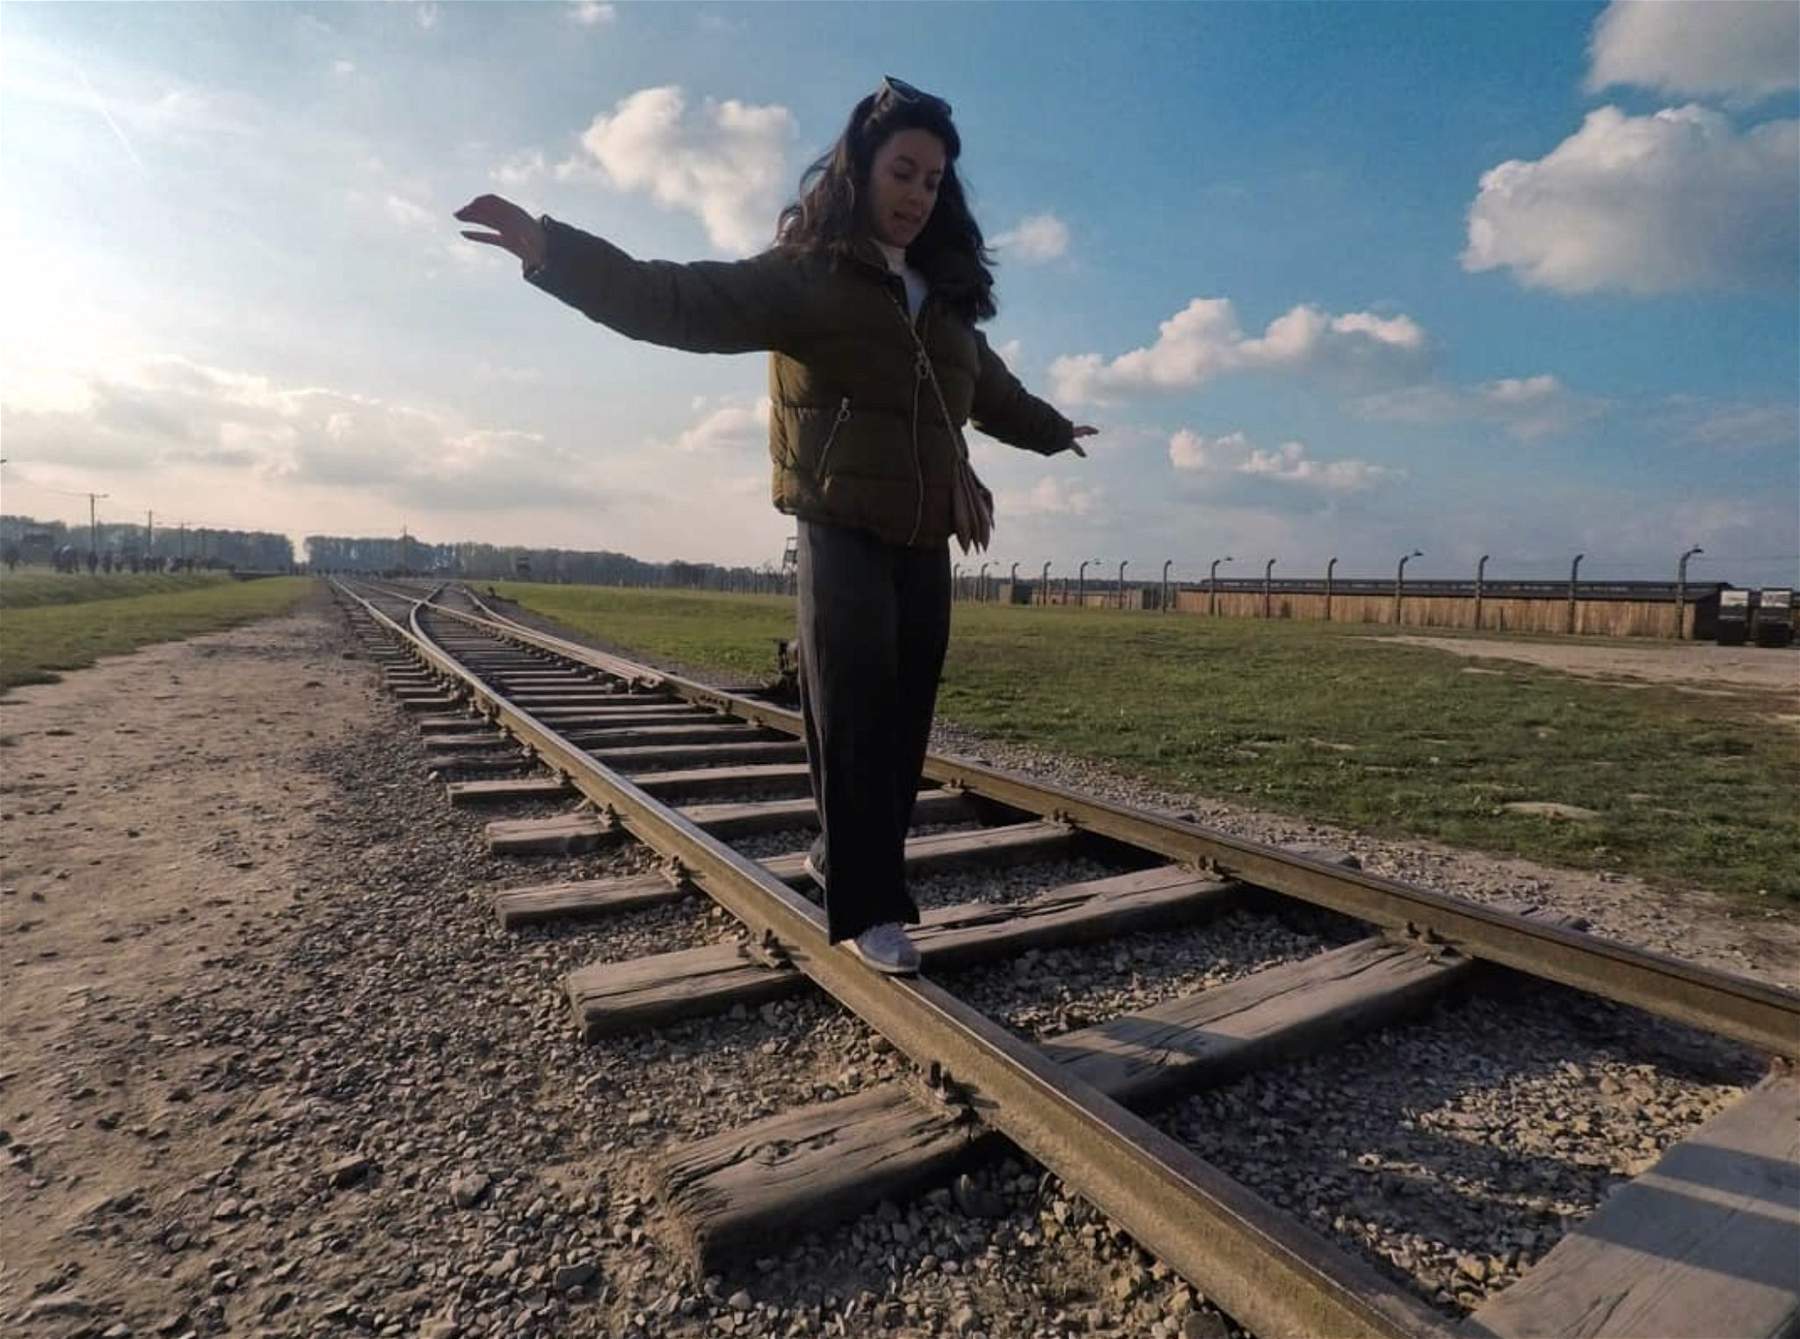 Auschwitz, appello contro le foto inappropriate. “Ci sono altri posti dove imparare a stare in equilibrio su un binario”